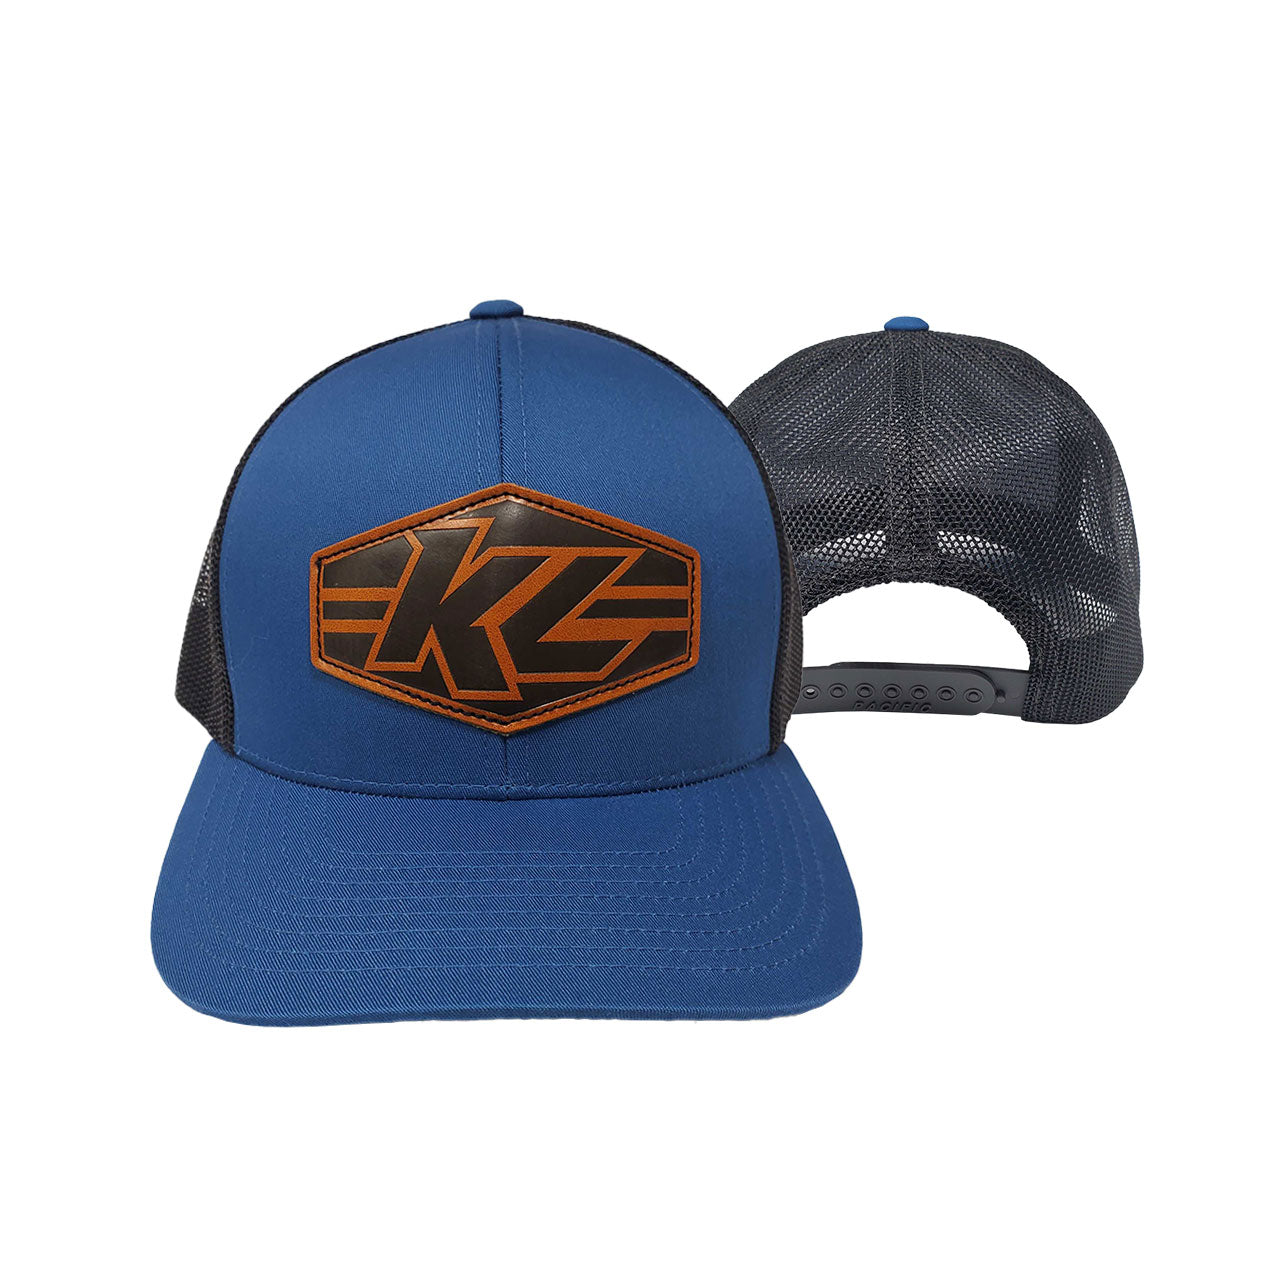 KL Diamond Leather Patch Hat - Shop Kyle Larson